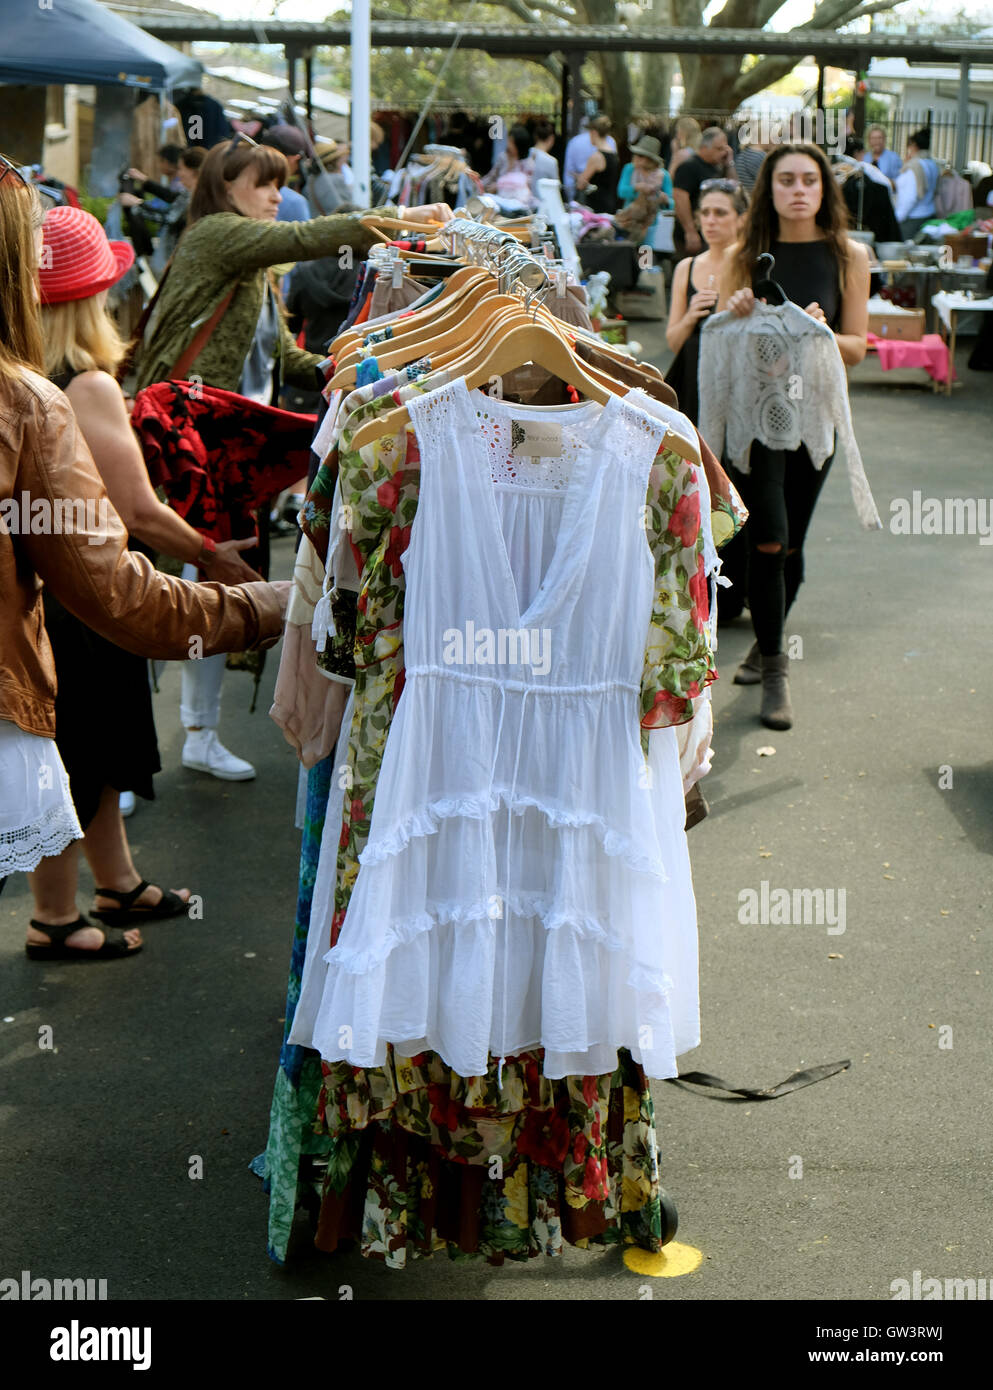 Boutique pour femmes boutique de vêtements dans un marché en plein air Banque D'Images